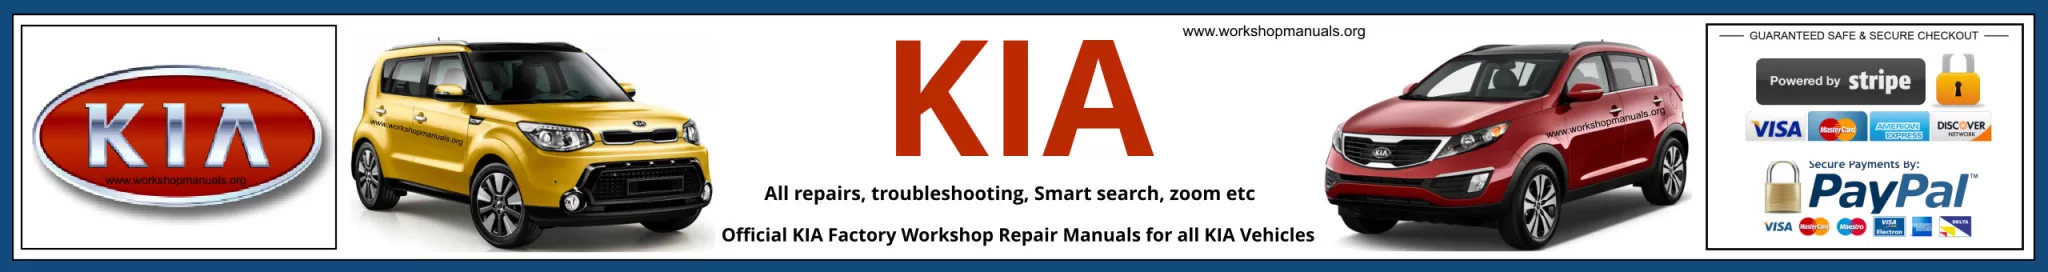 KIA Workshop Service Repair Manuals Banner